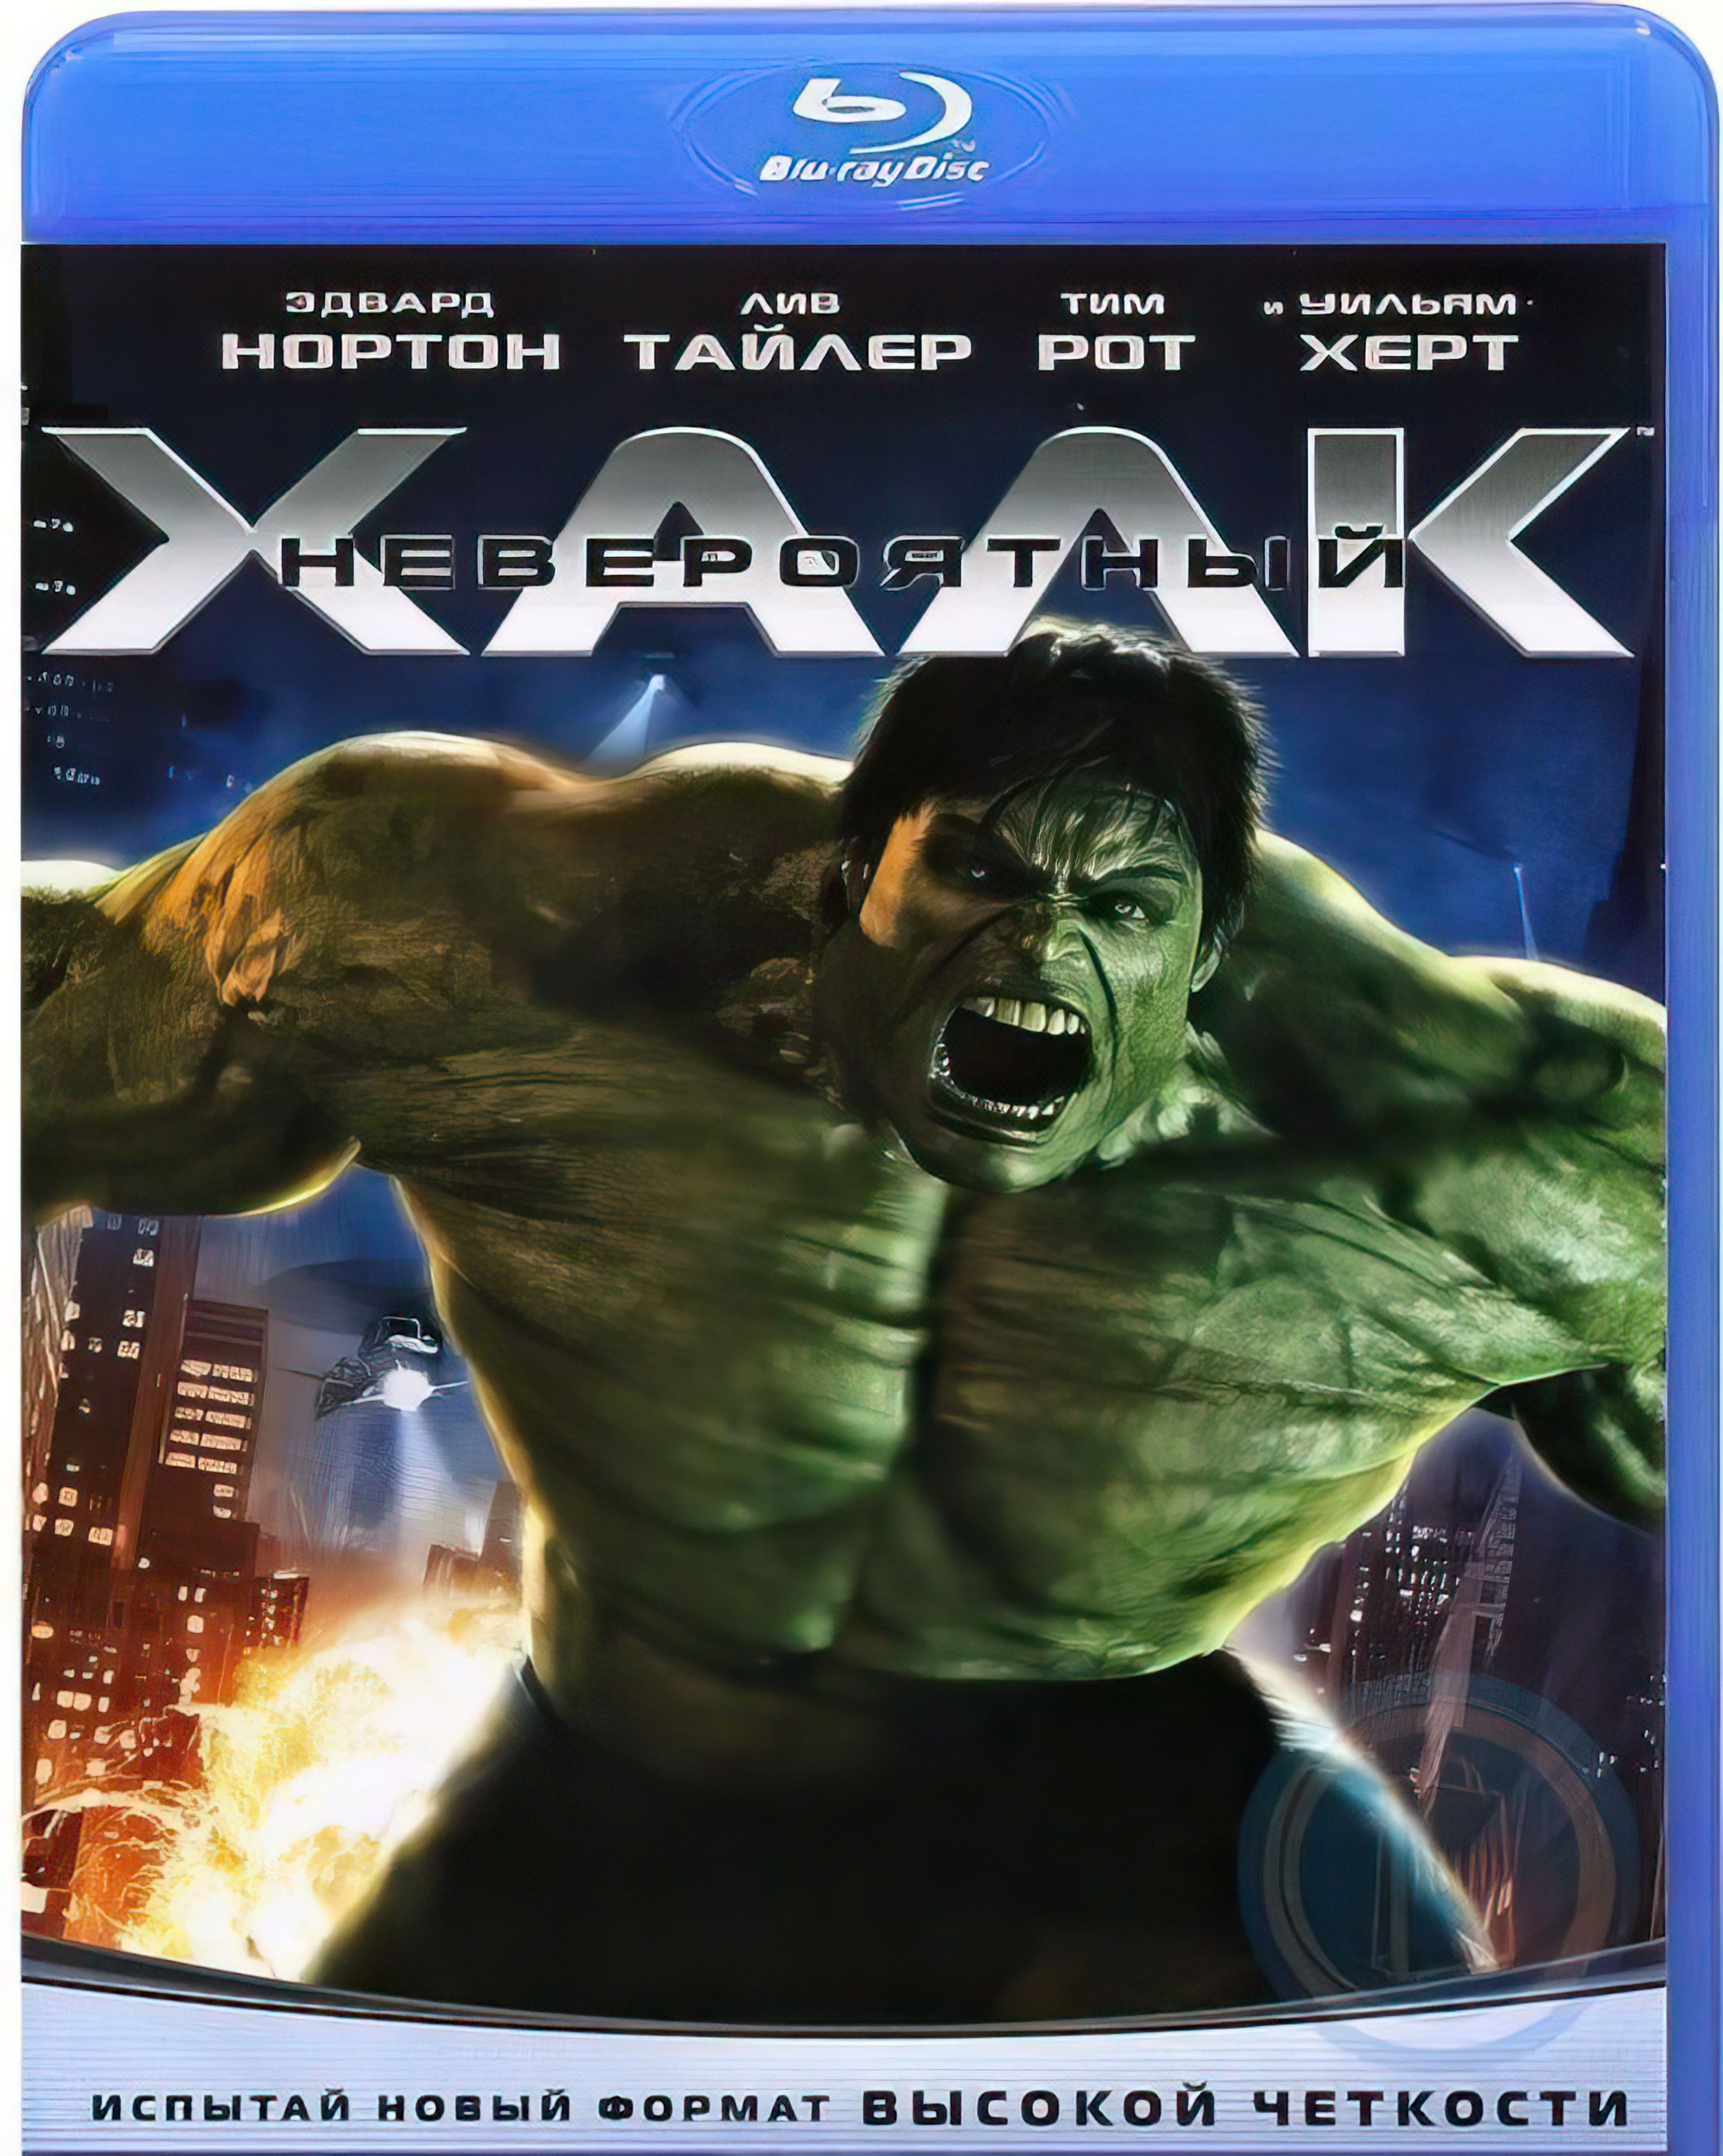 Невероятный халк на русском. The incredible Hulk 2008. Невероятный Халк (2008) (the incredible Hulk).